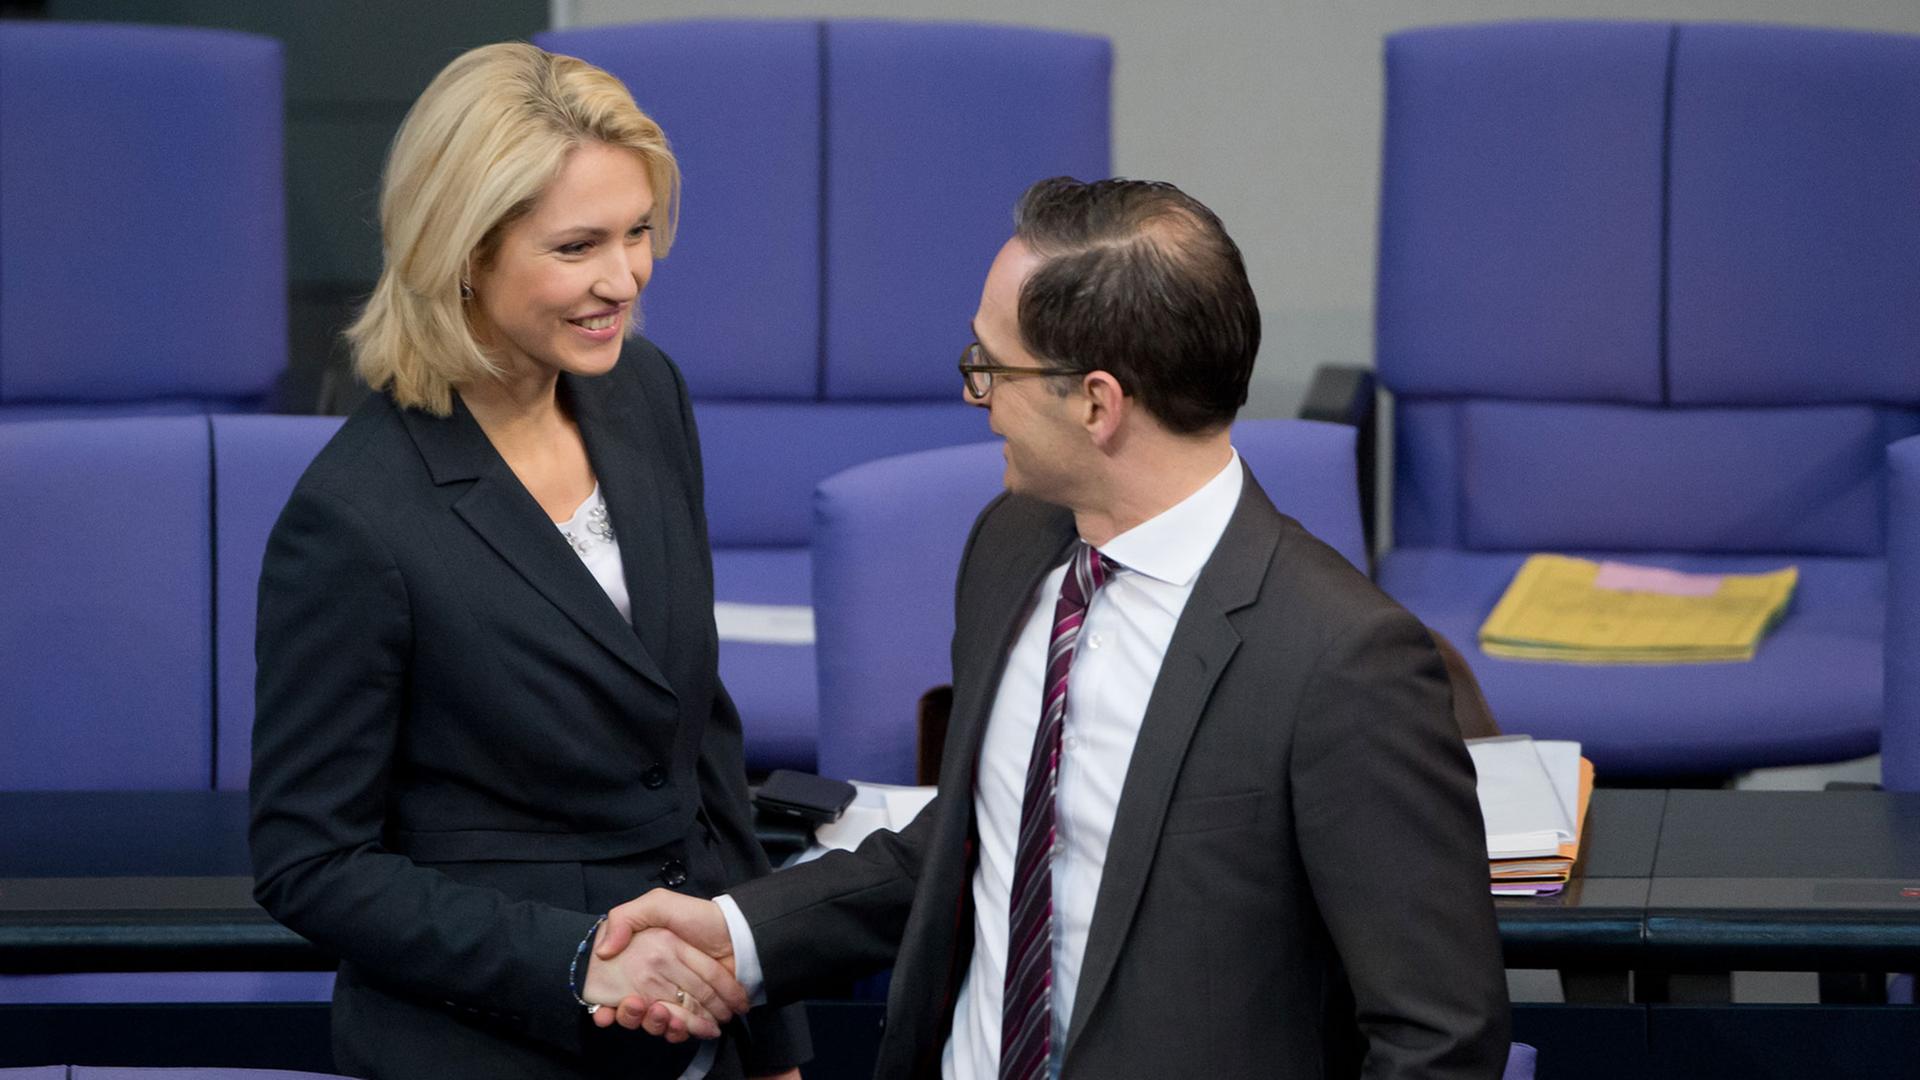 Bundesfamilienministerin Manuela Schwesig und Bundesjustizminister Heiko Maas (beide SPD) freuen sich, dass die Frauenquote kommt.